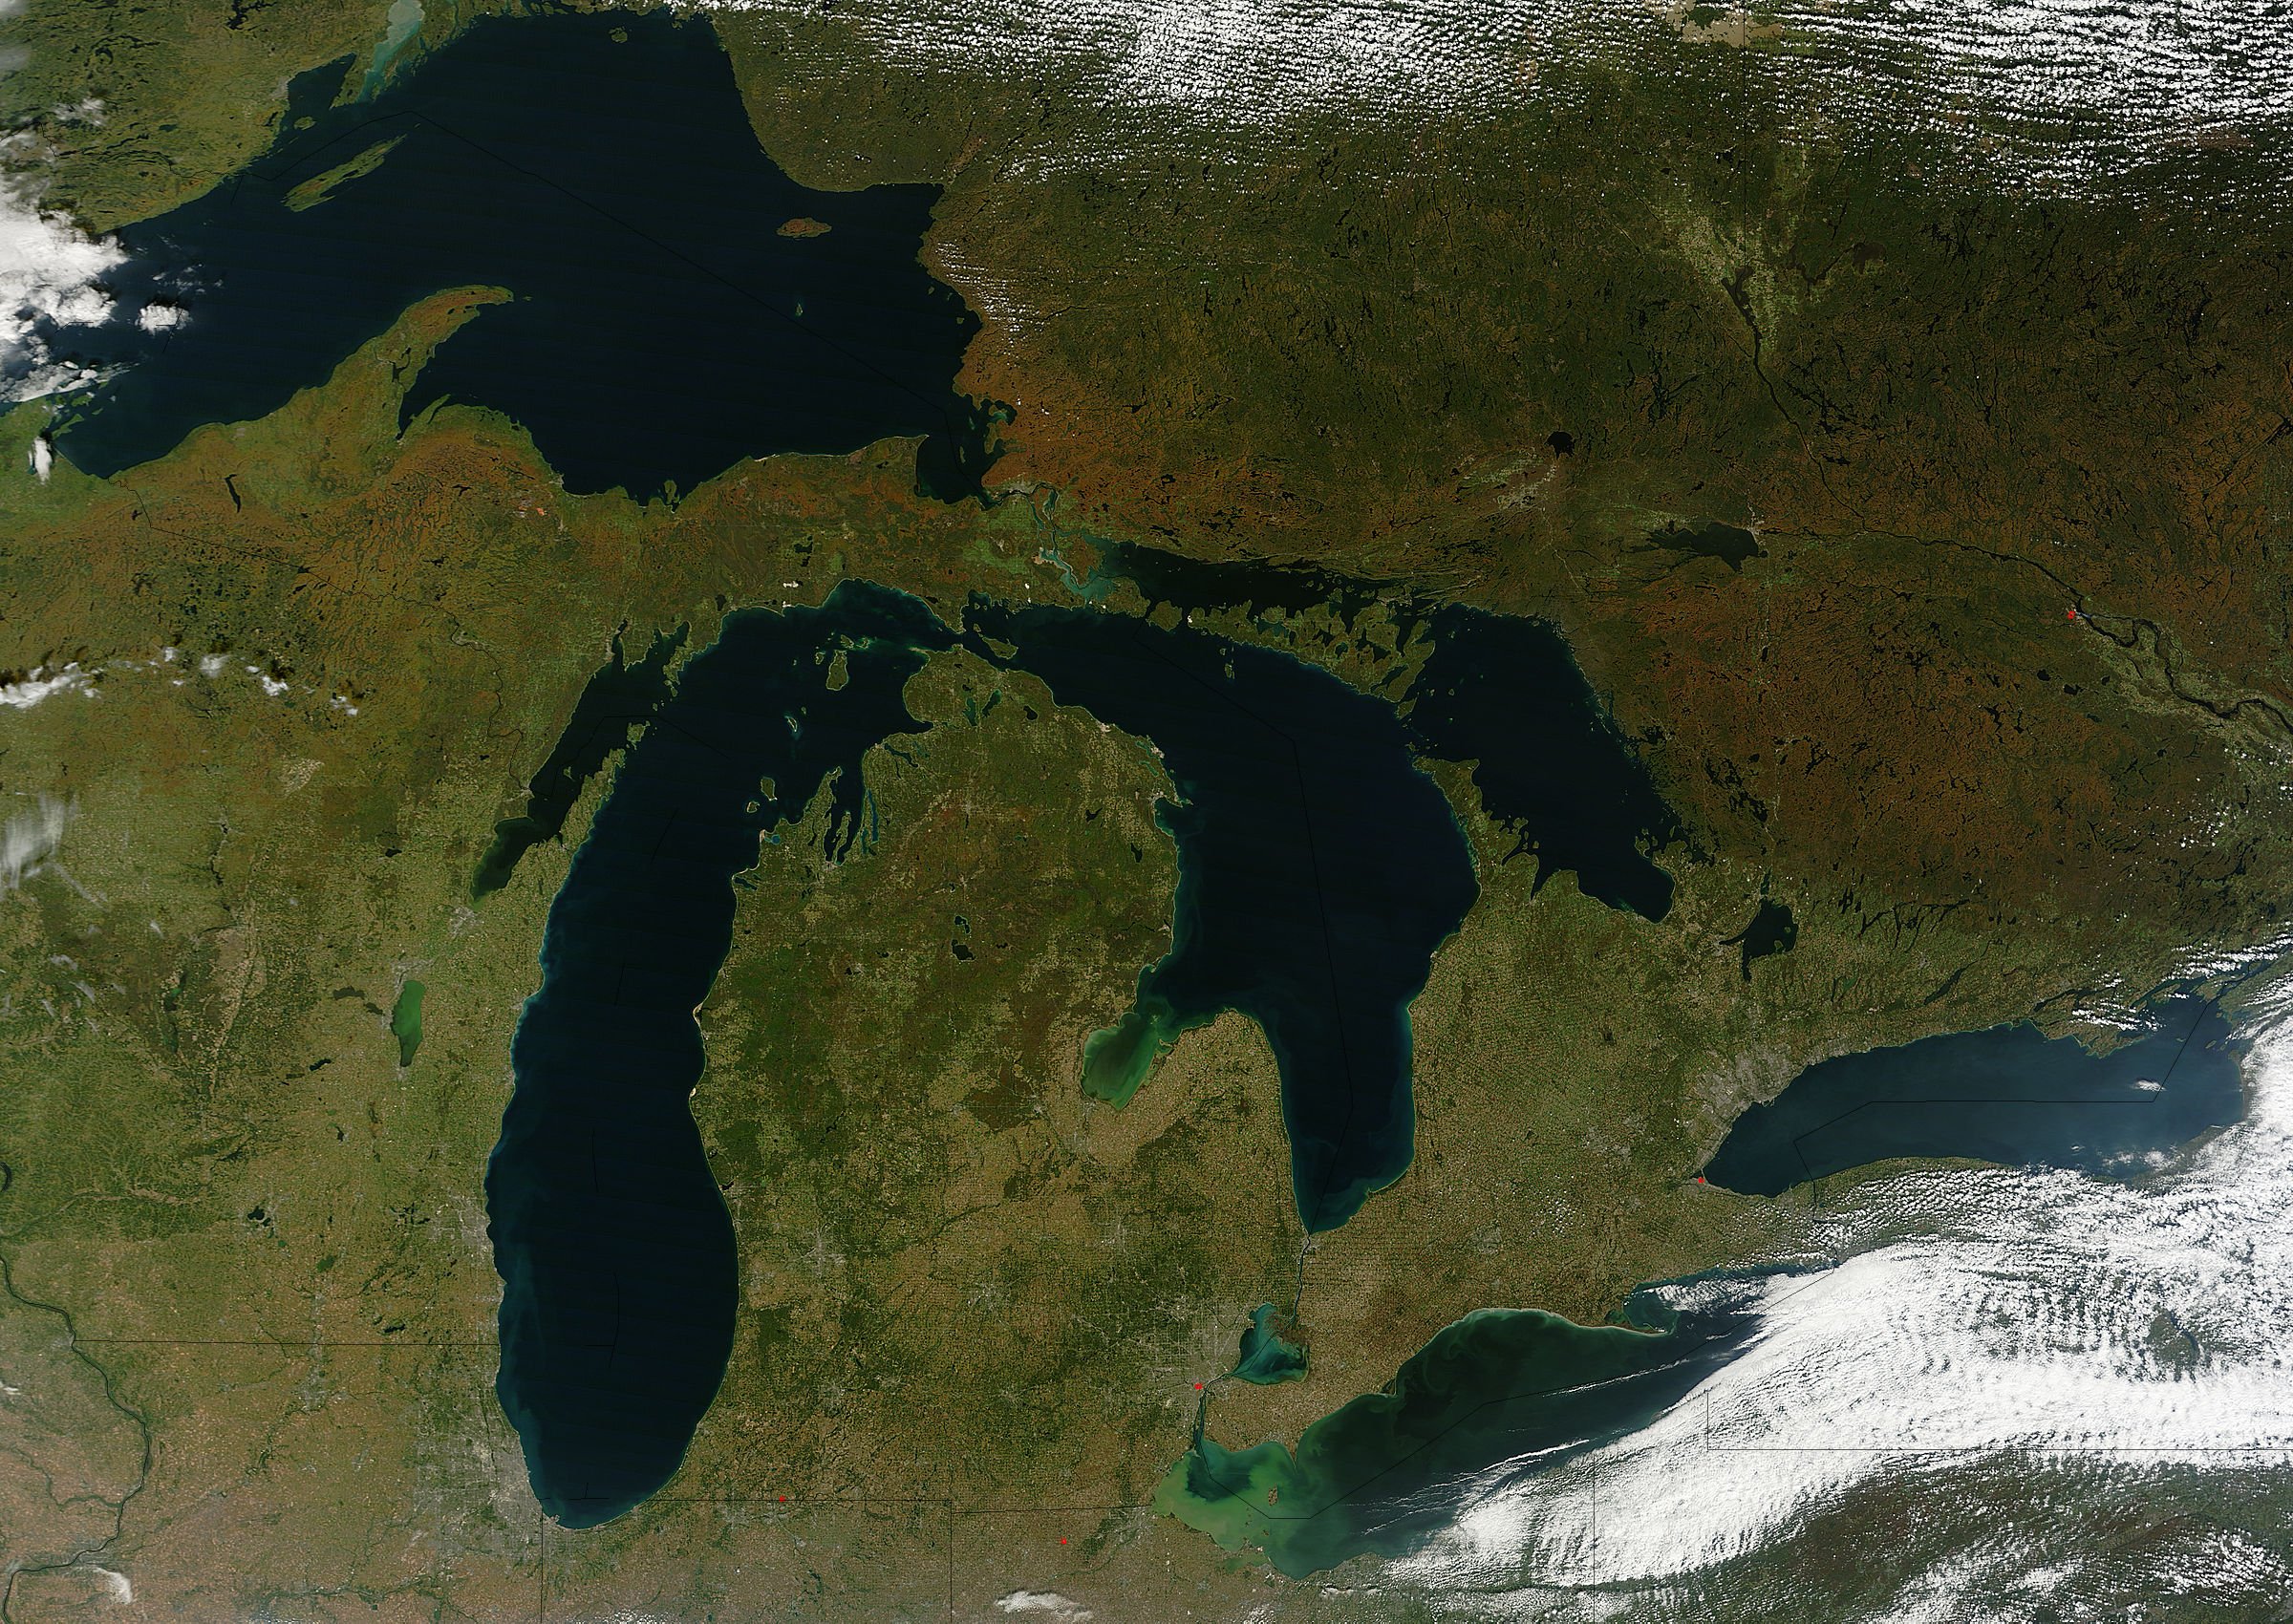 Район великих американских озер. Великие озёра озёра Северной Америки. Великие озера Северной Америки Мичиган. Великие американские озёра верхнее Гурон Мичиган Эри Онтарио. Великие озера (бассейн Атлантического океана).